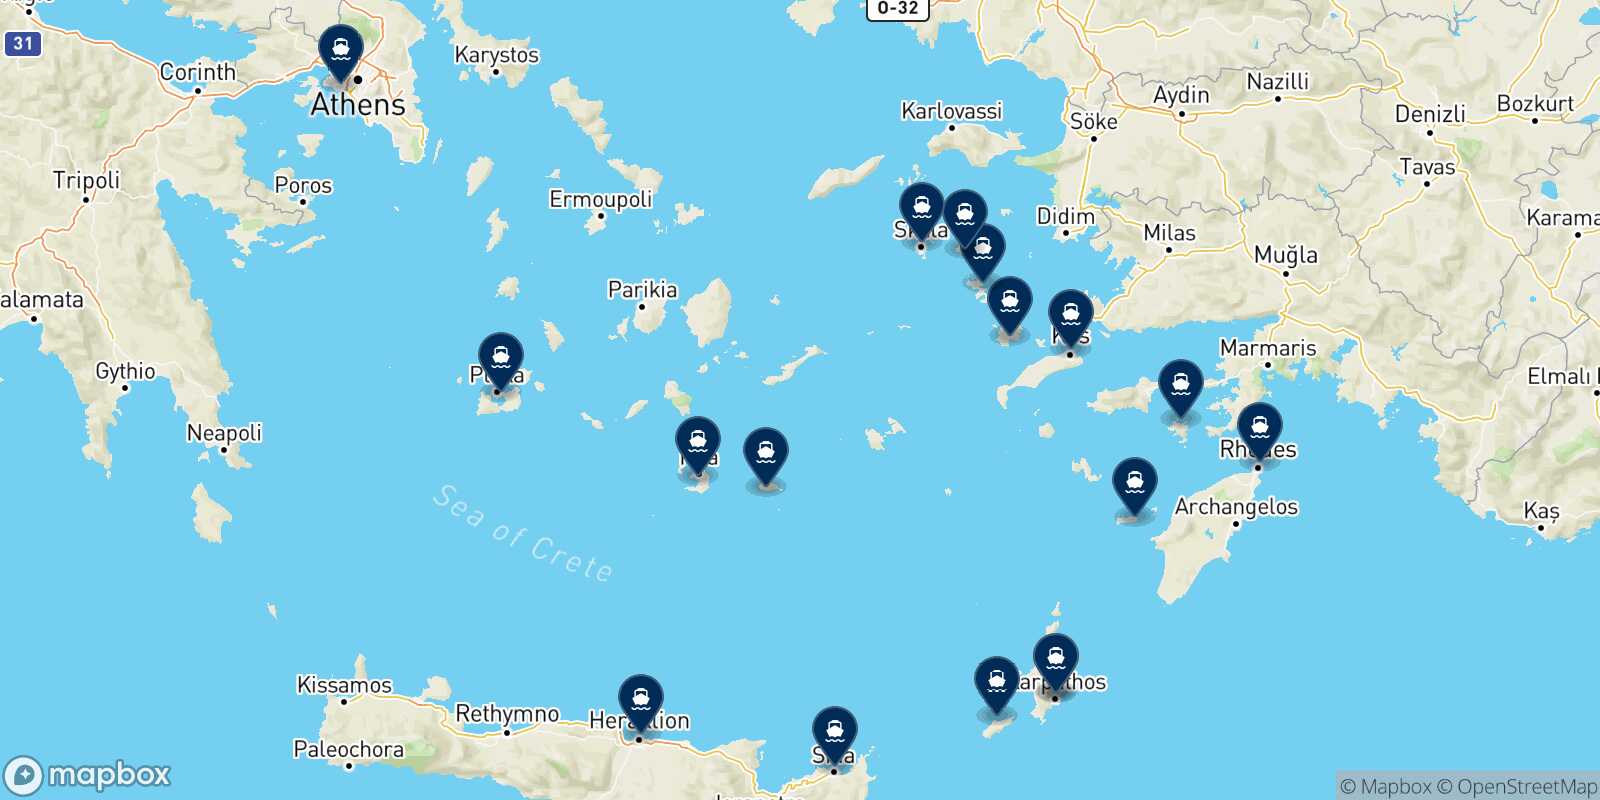 Mappa delle destinazioni raggiungibili da Karpathos